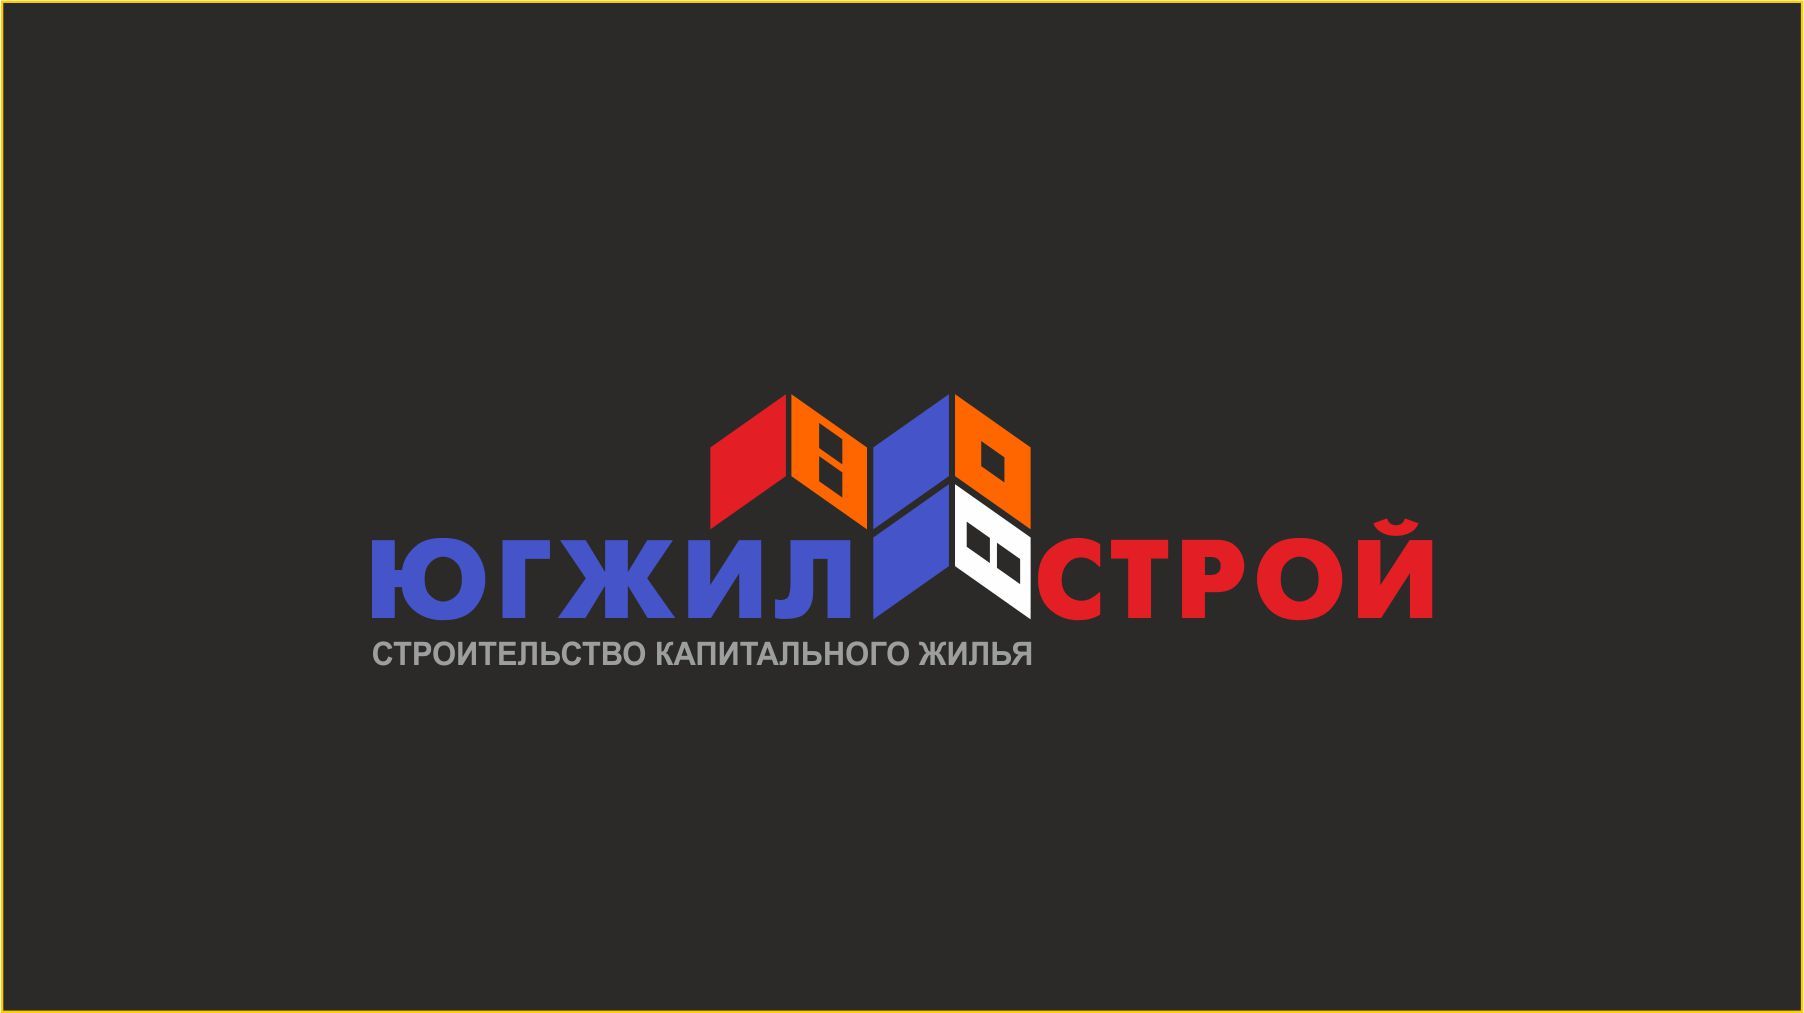 Создание логотипа для сайта строительной компании - дизайнер SobolevS21